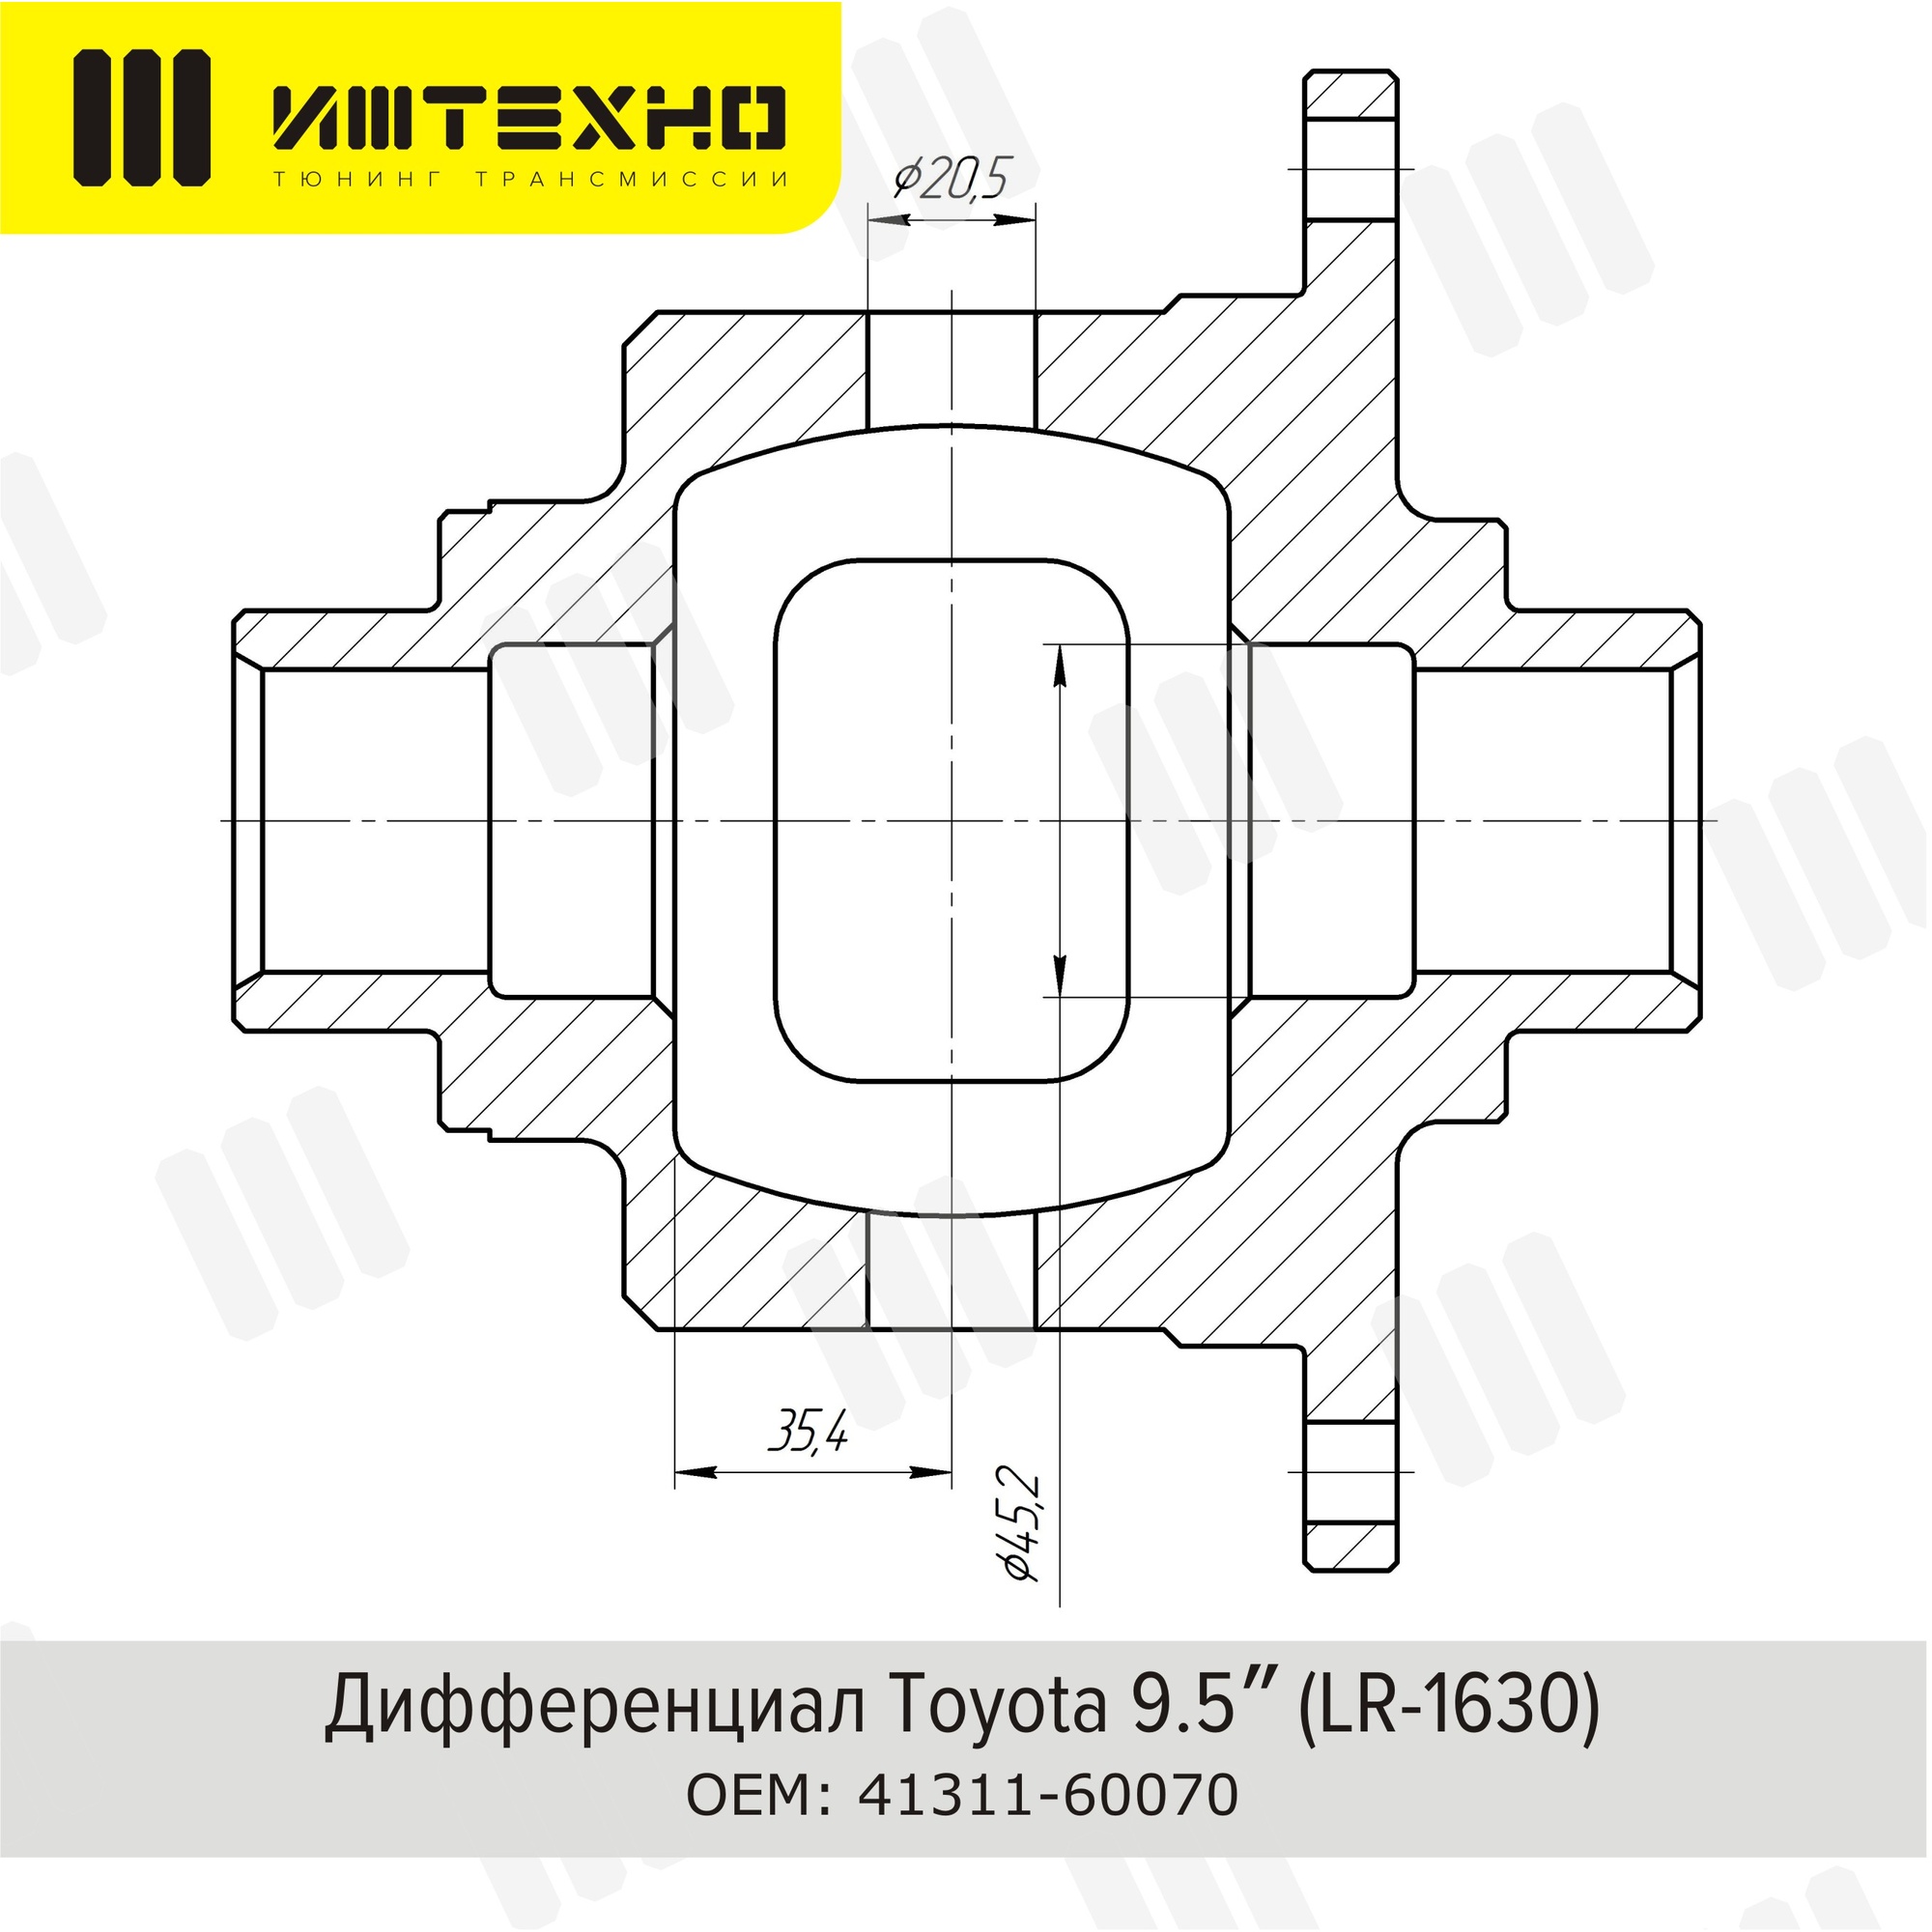 Блокировка дифференциала Блокка™ Toyota 7.5 (LR-1611)